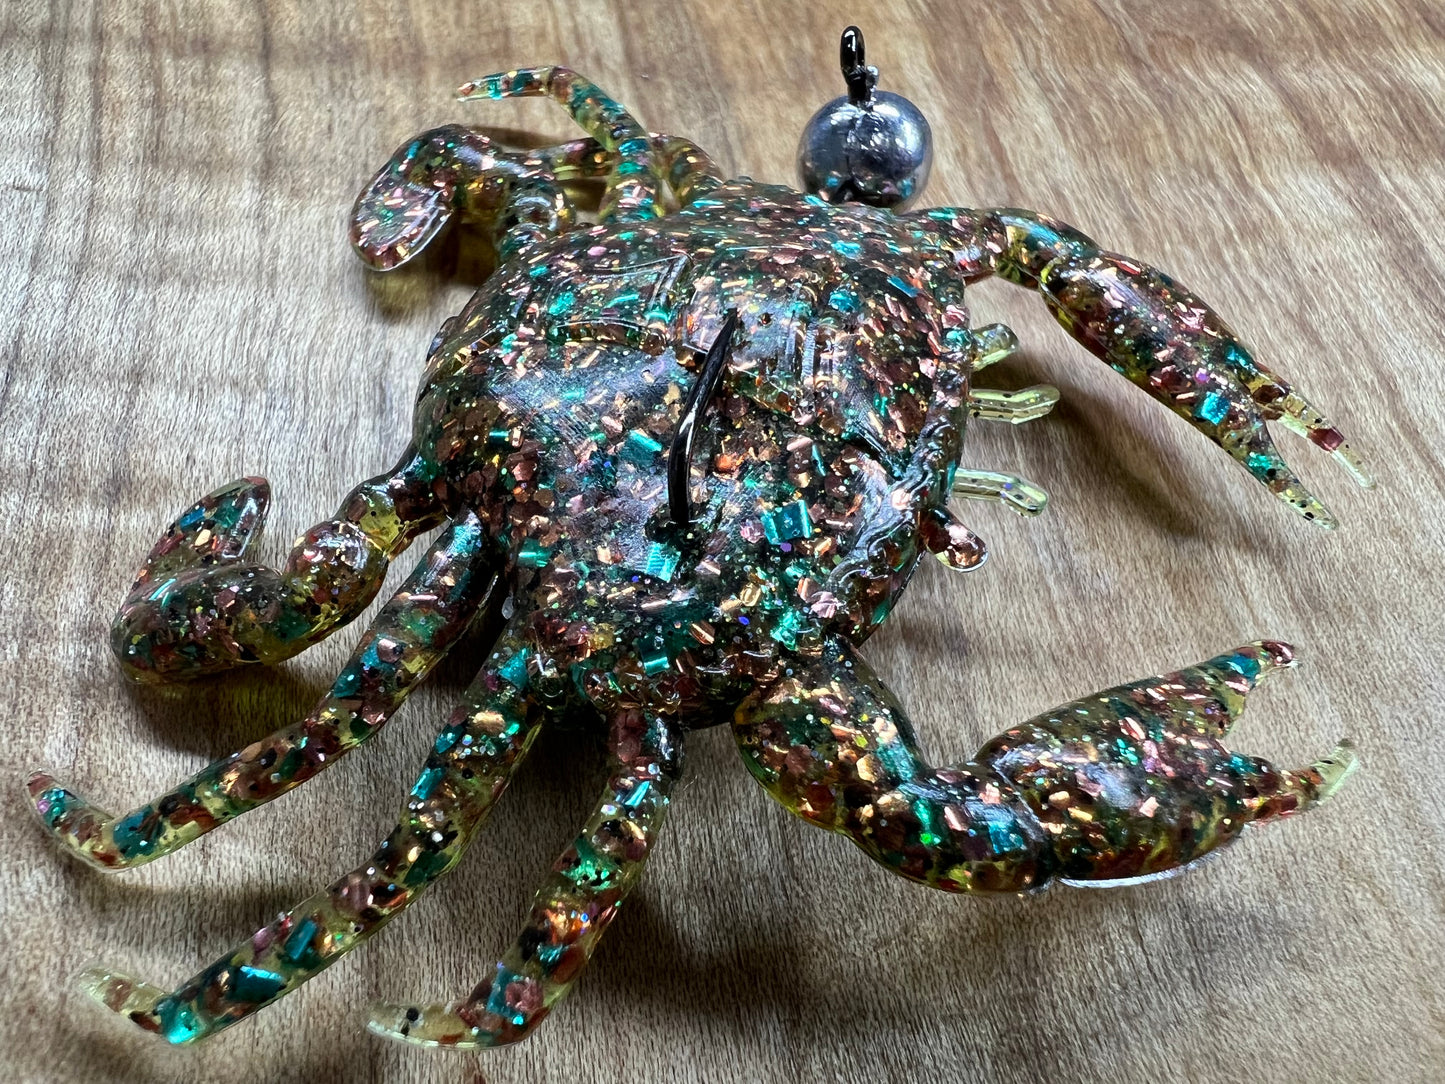 2.25” Campania Crabs.